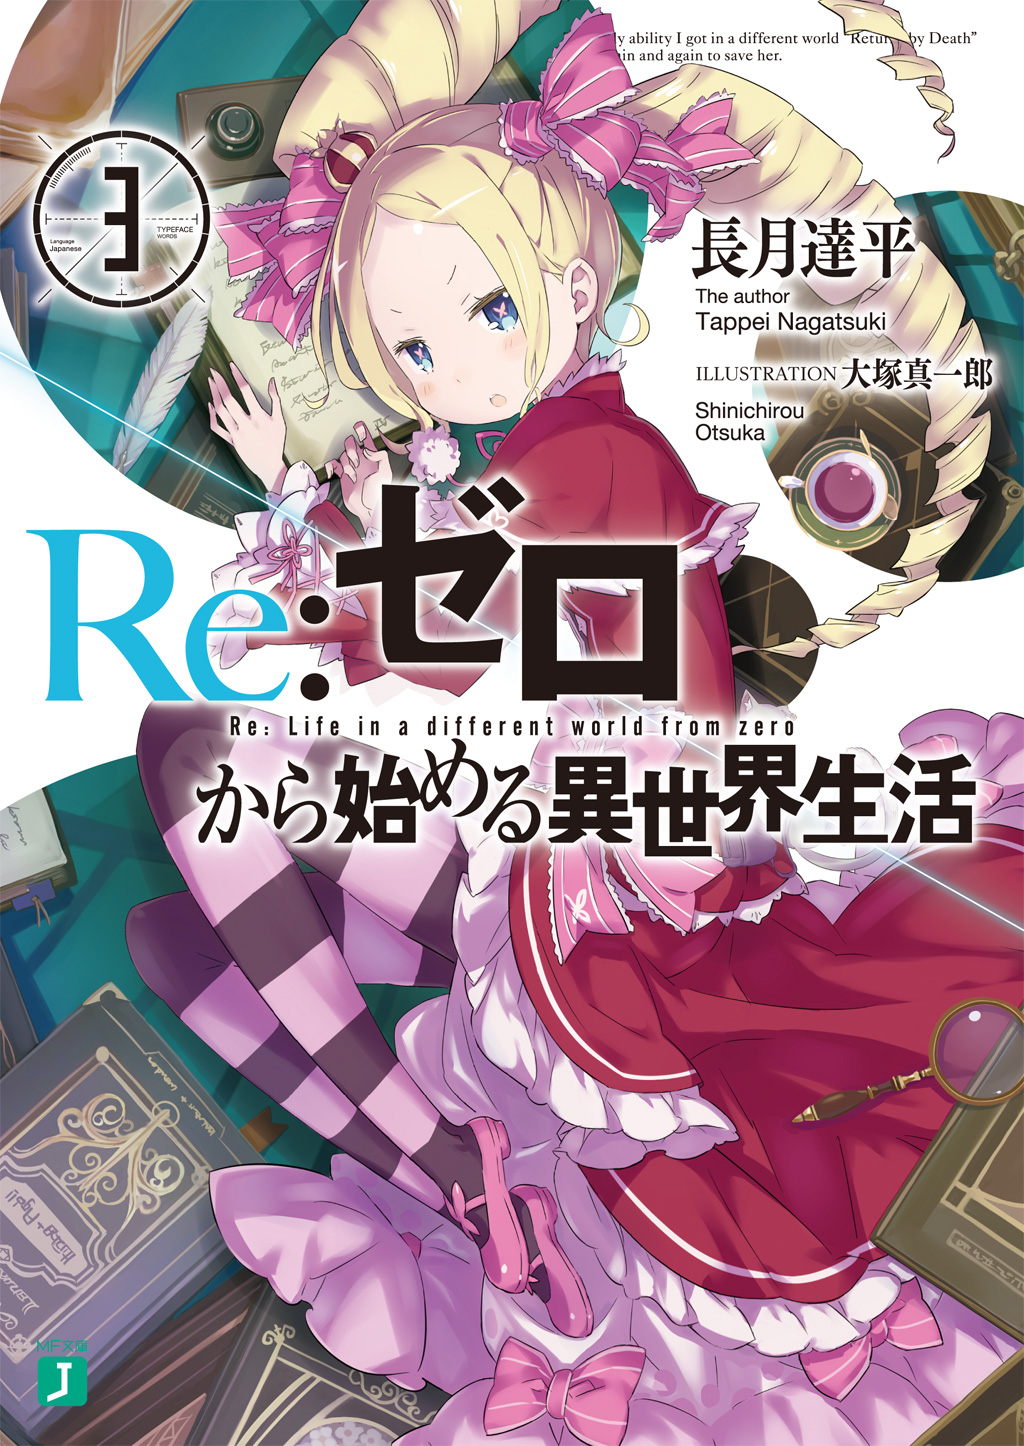 Re:Zero Light Novel Volume 3  Anime, Anime images, Japanese anime